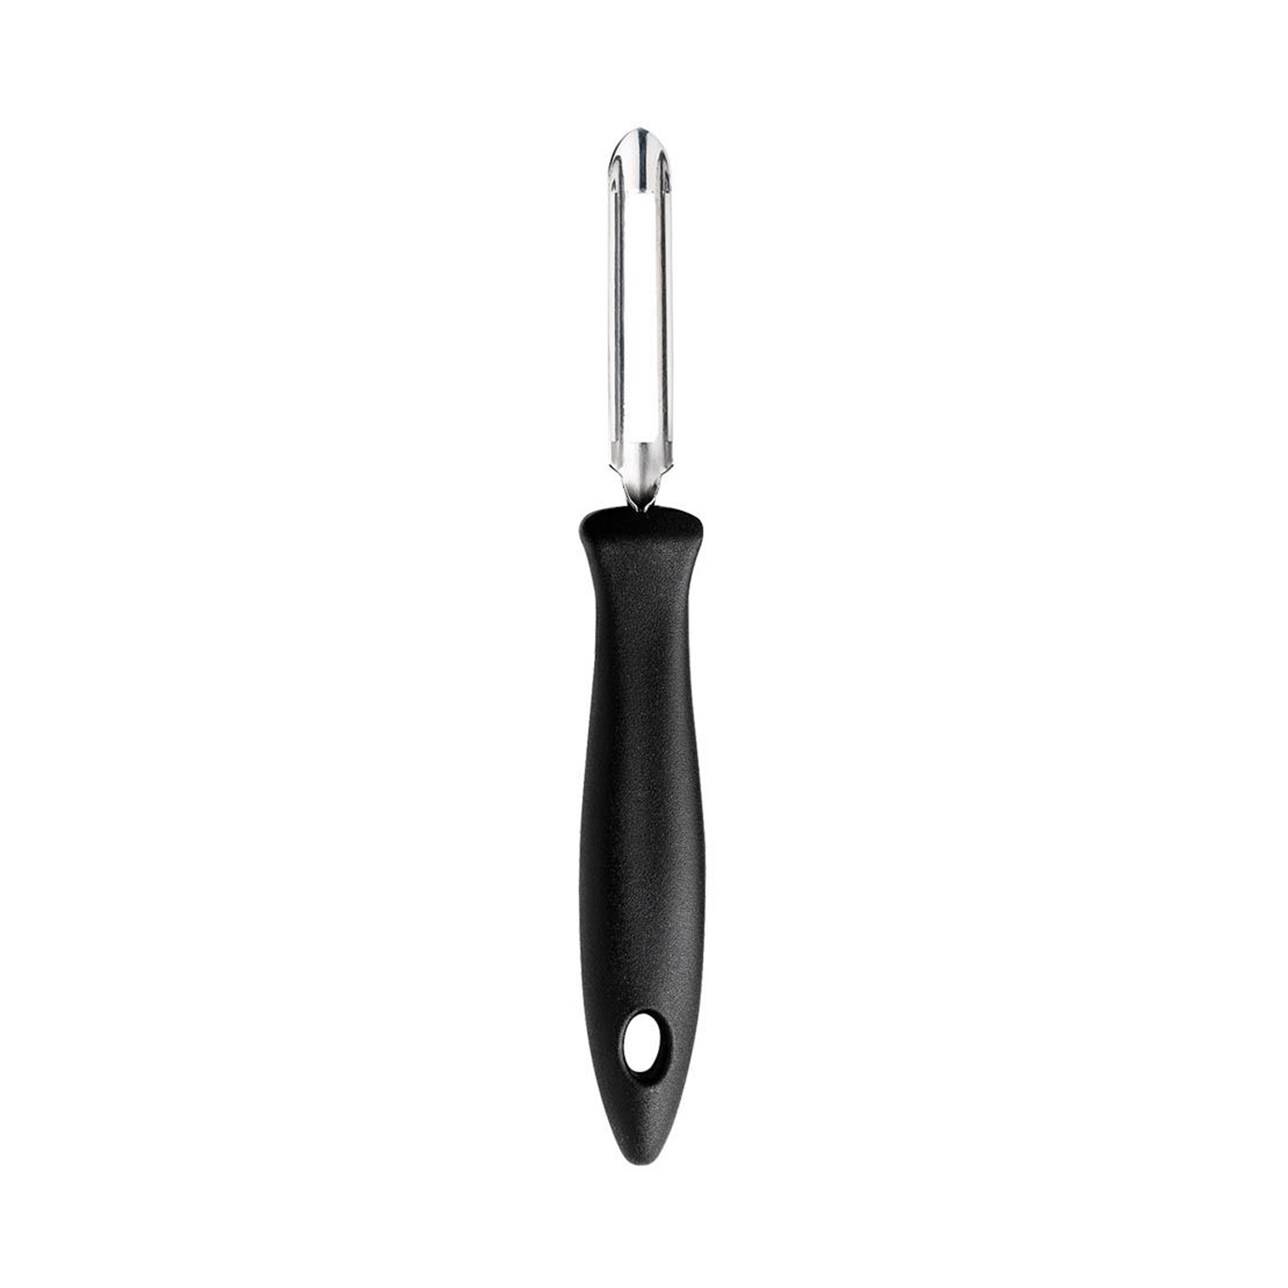 https://royaldesign.com/image/2/fiskars-essential-potato-peeler-with-movable-blade-0